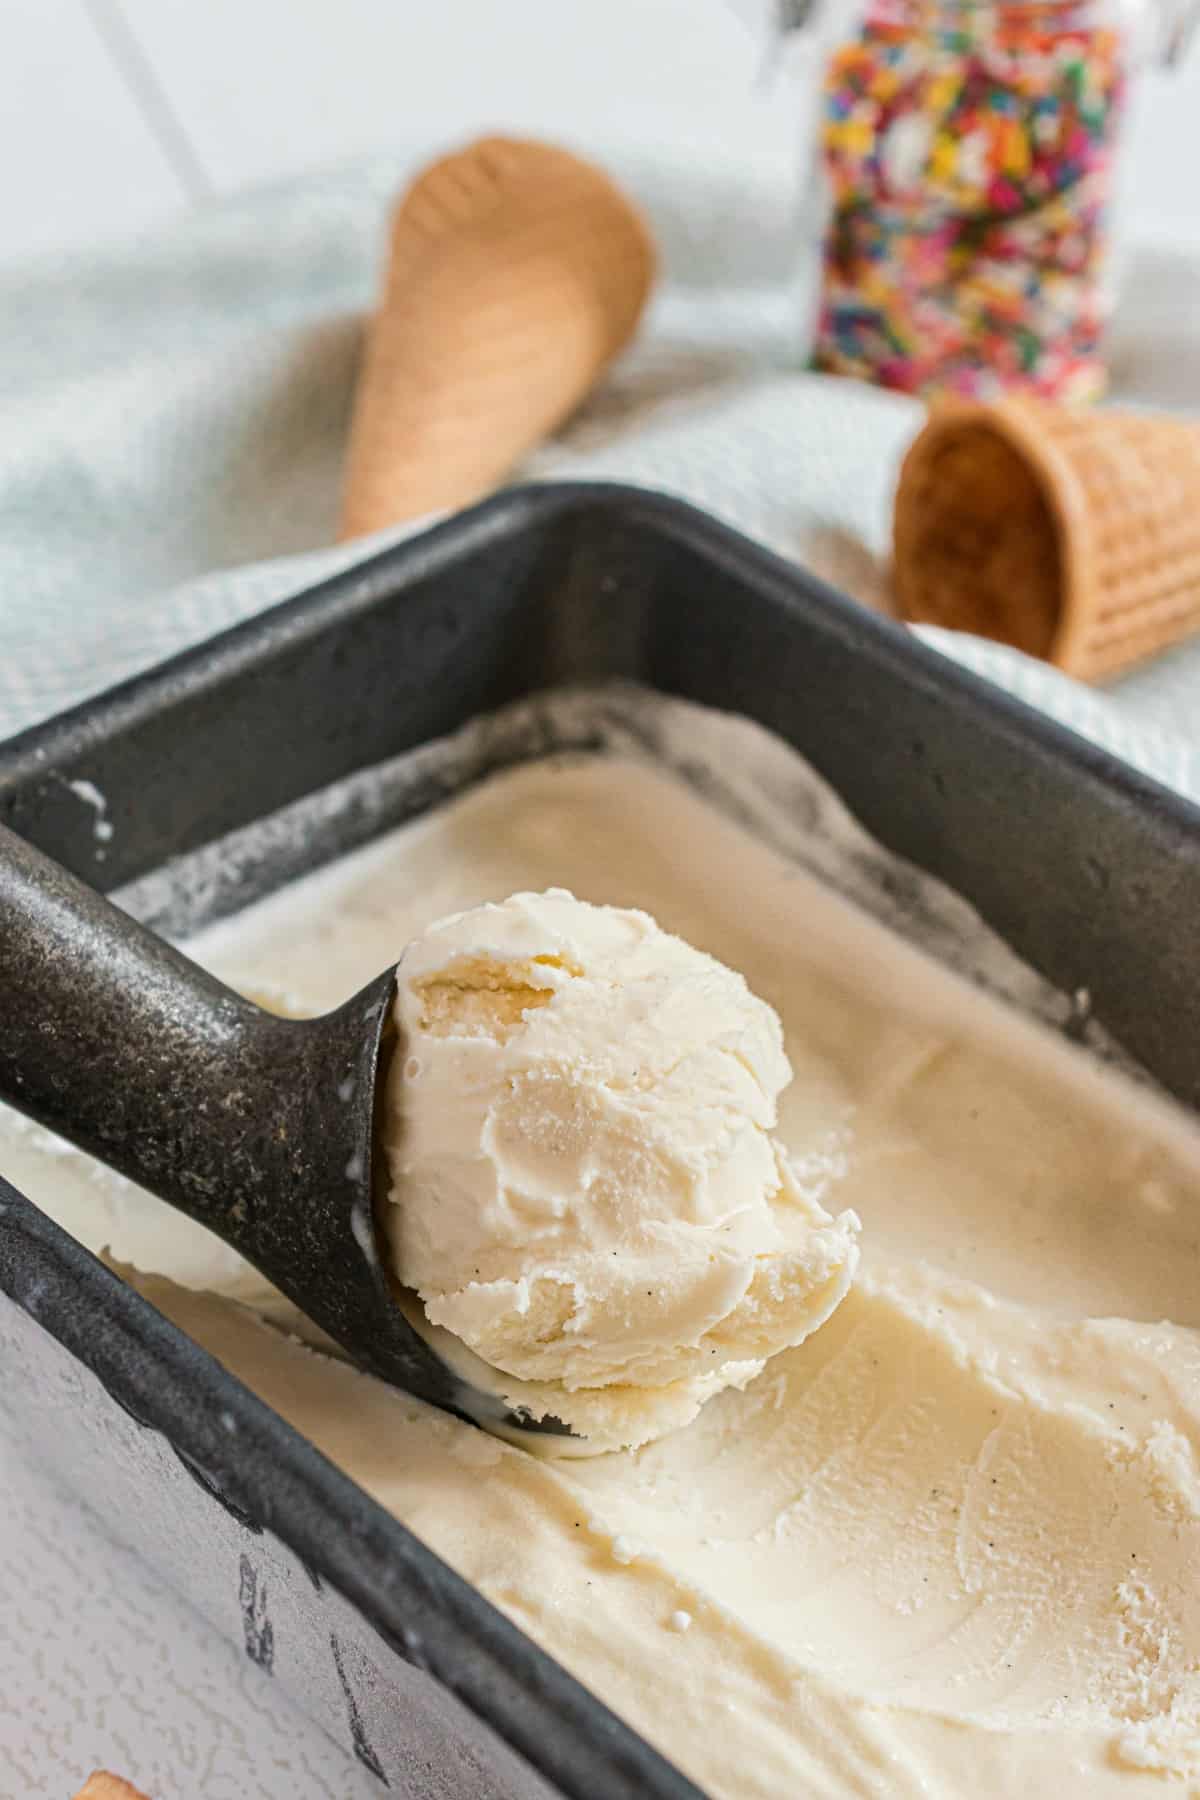 https://www.shugarysweets.com/wp-content/uploads/2020/09/vanilla-ice-cream-3.jpg